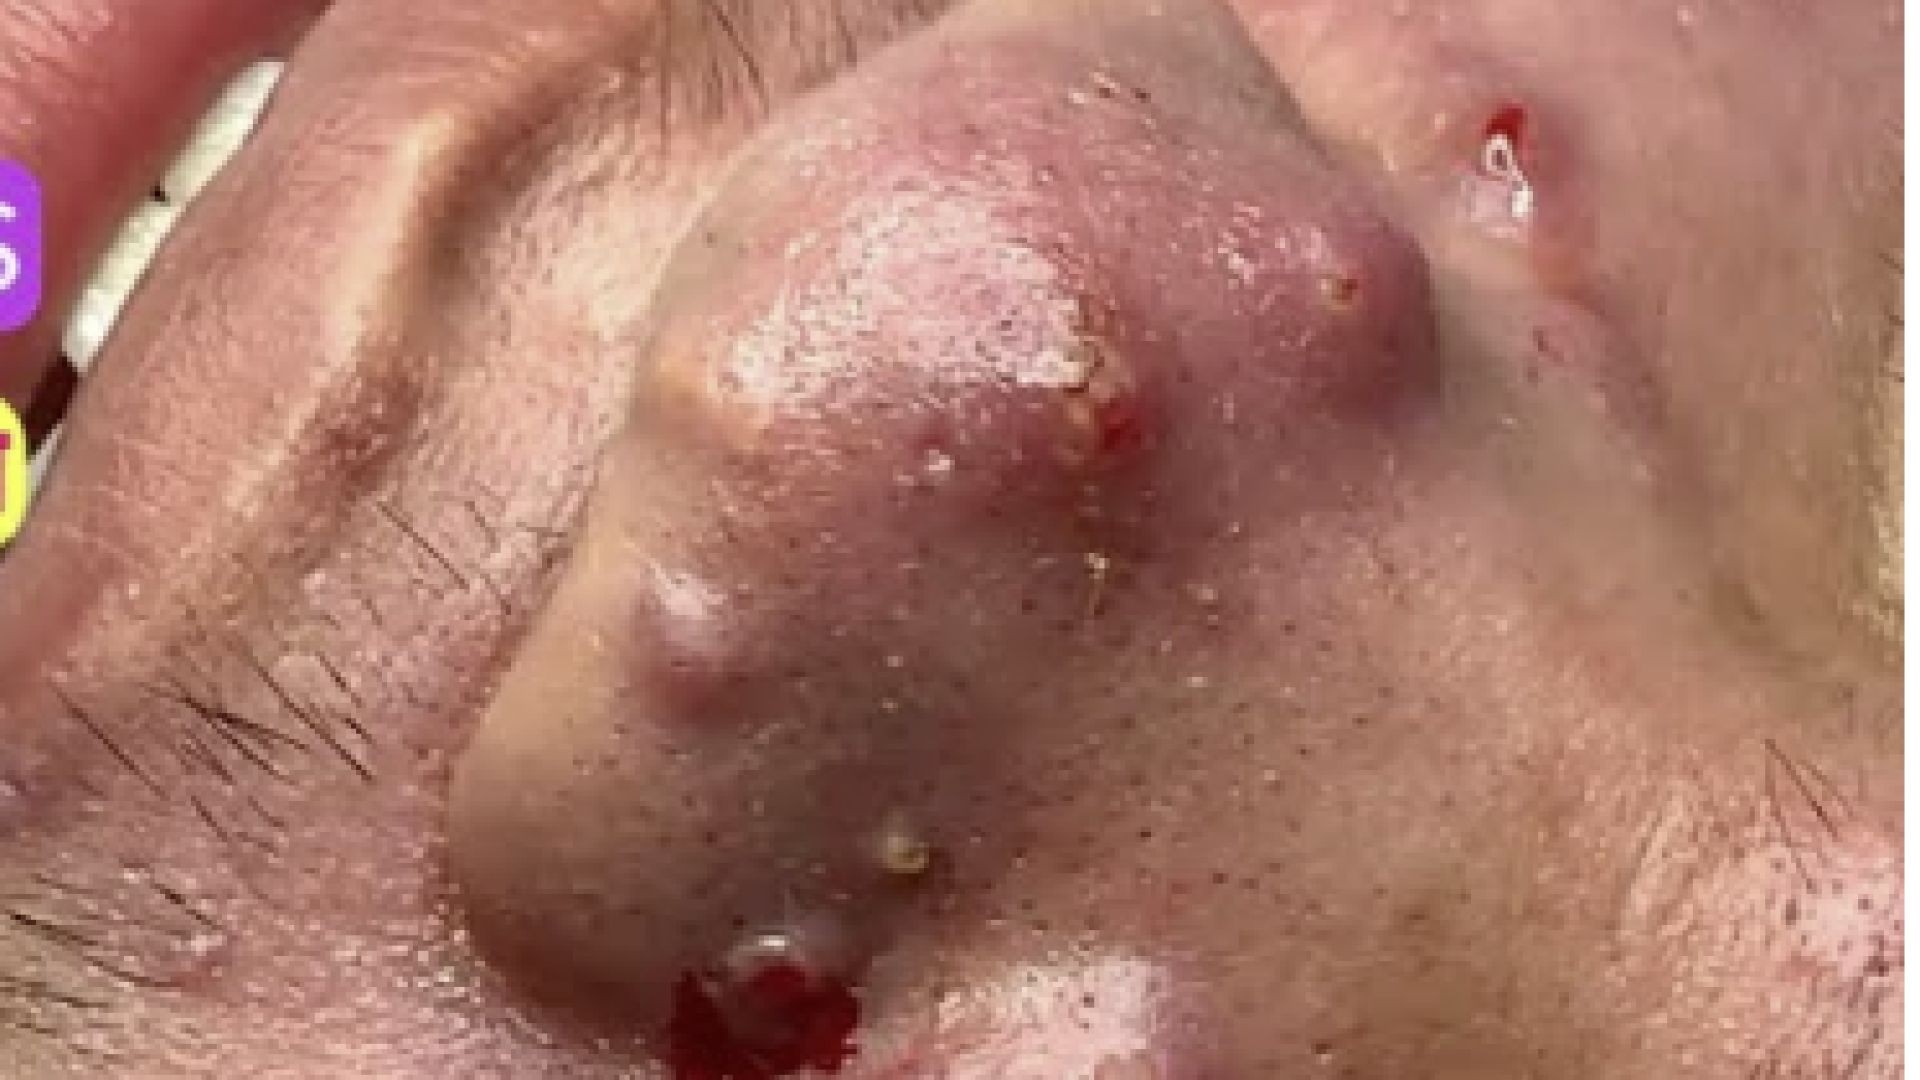 Mụn mủ siêu nhiều mụn viêm|Big acnes pimples,pusstule,blackheads extraction Dr Hoan 0985773391